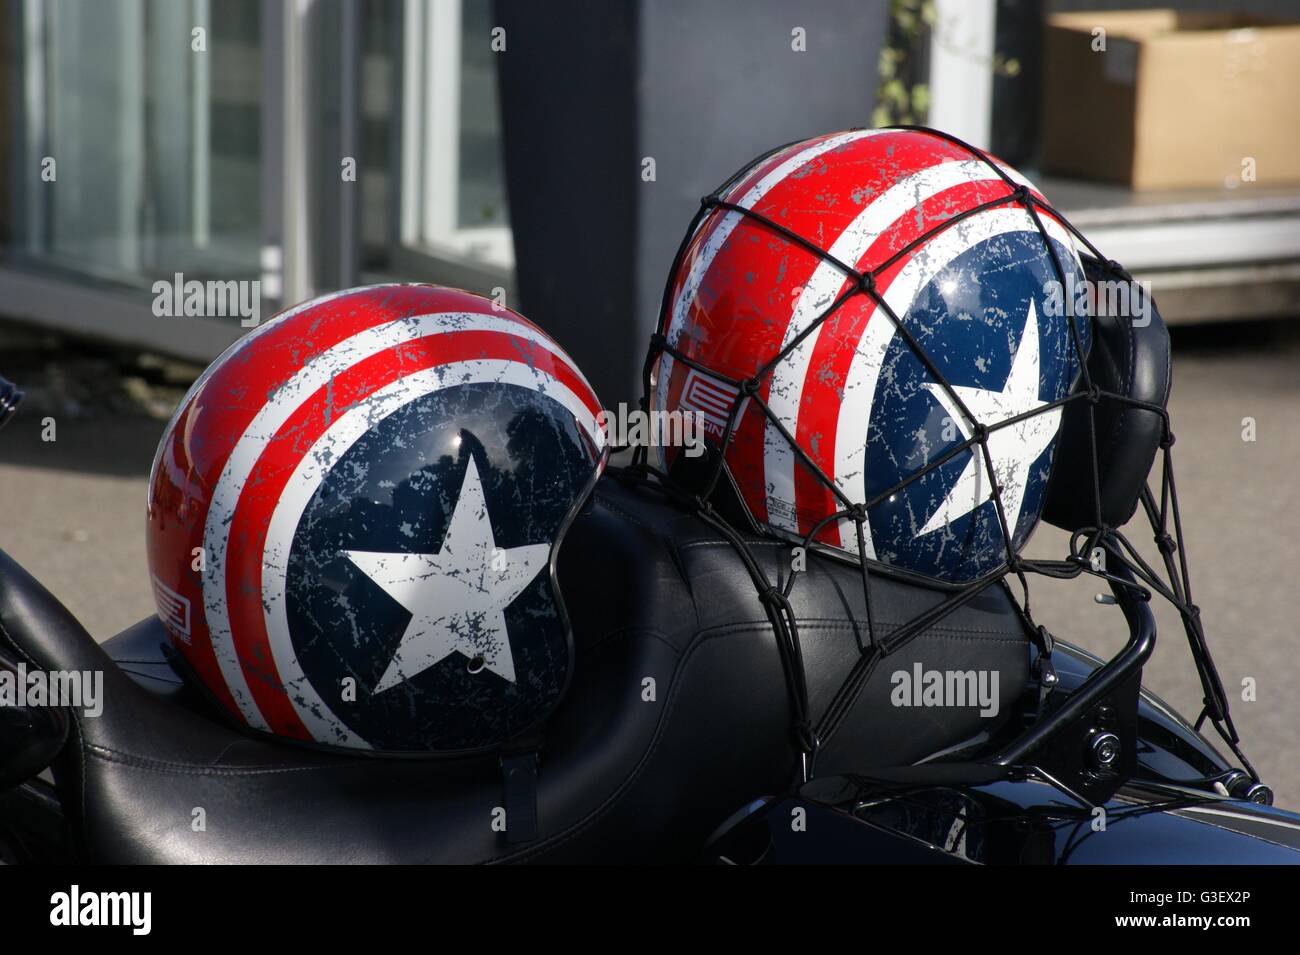 Deux casques de moto avec des stars and stripes Photo Stock - Alamy